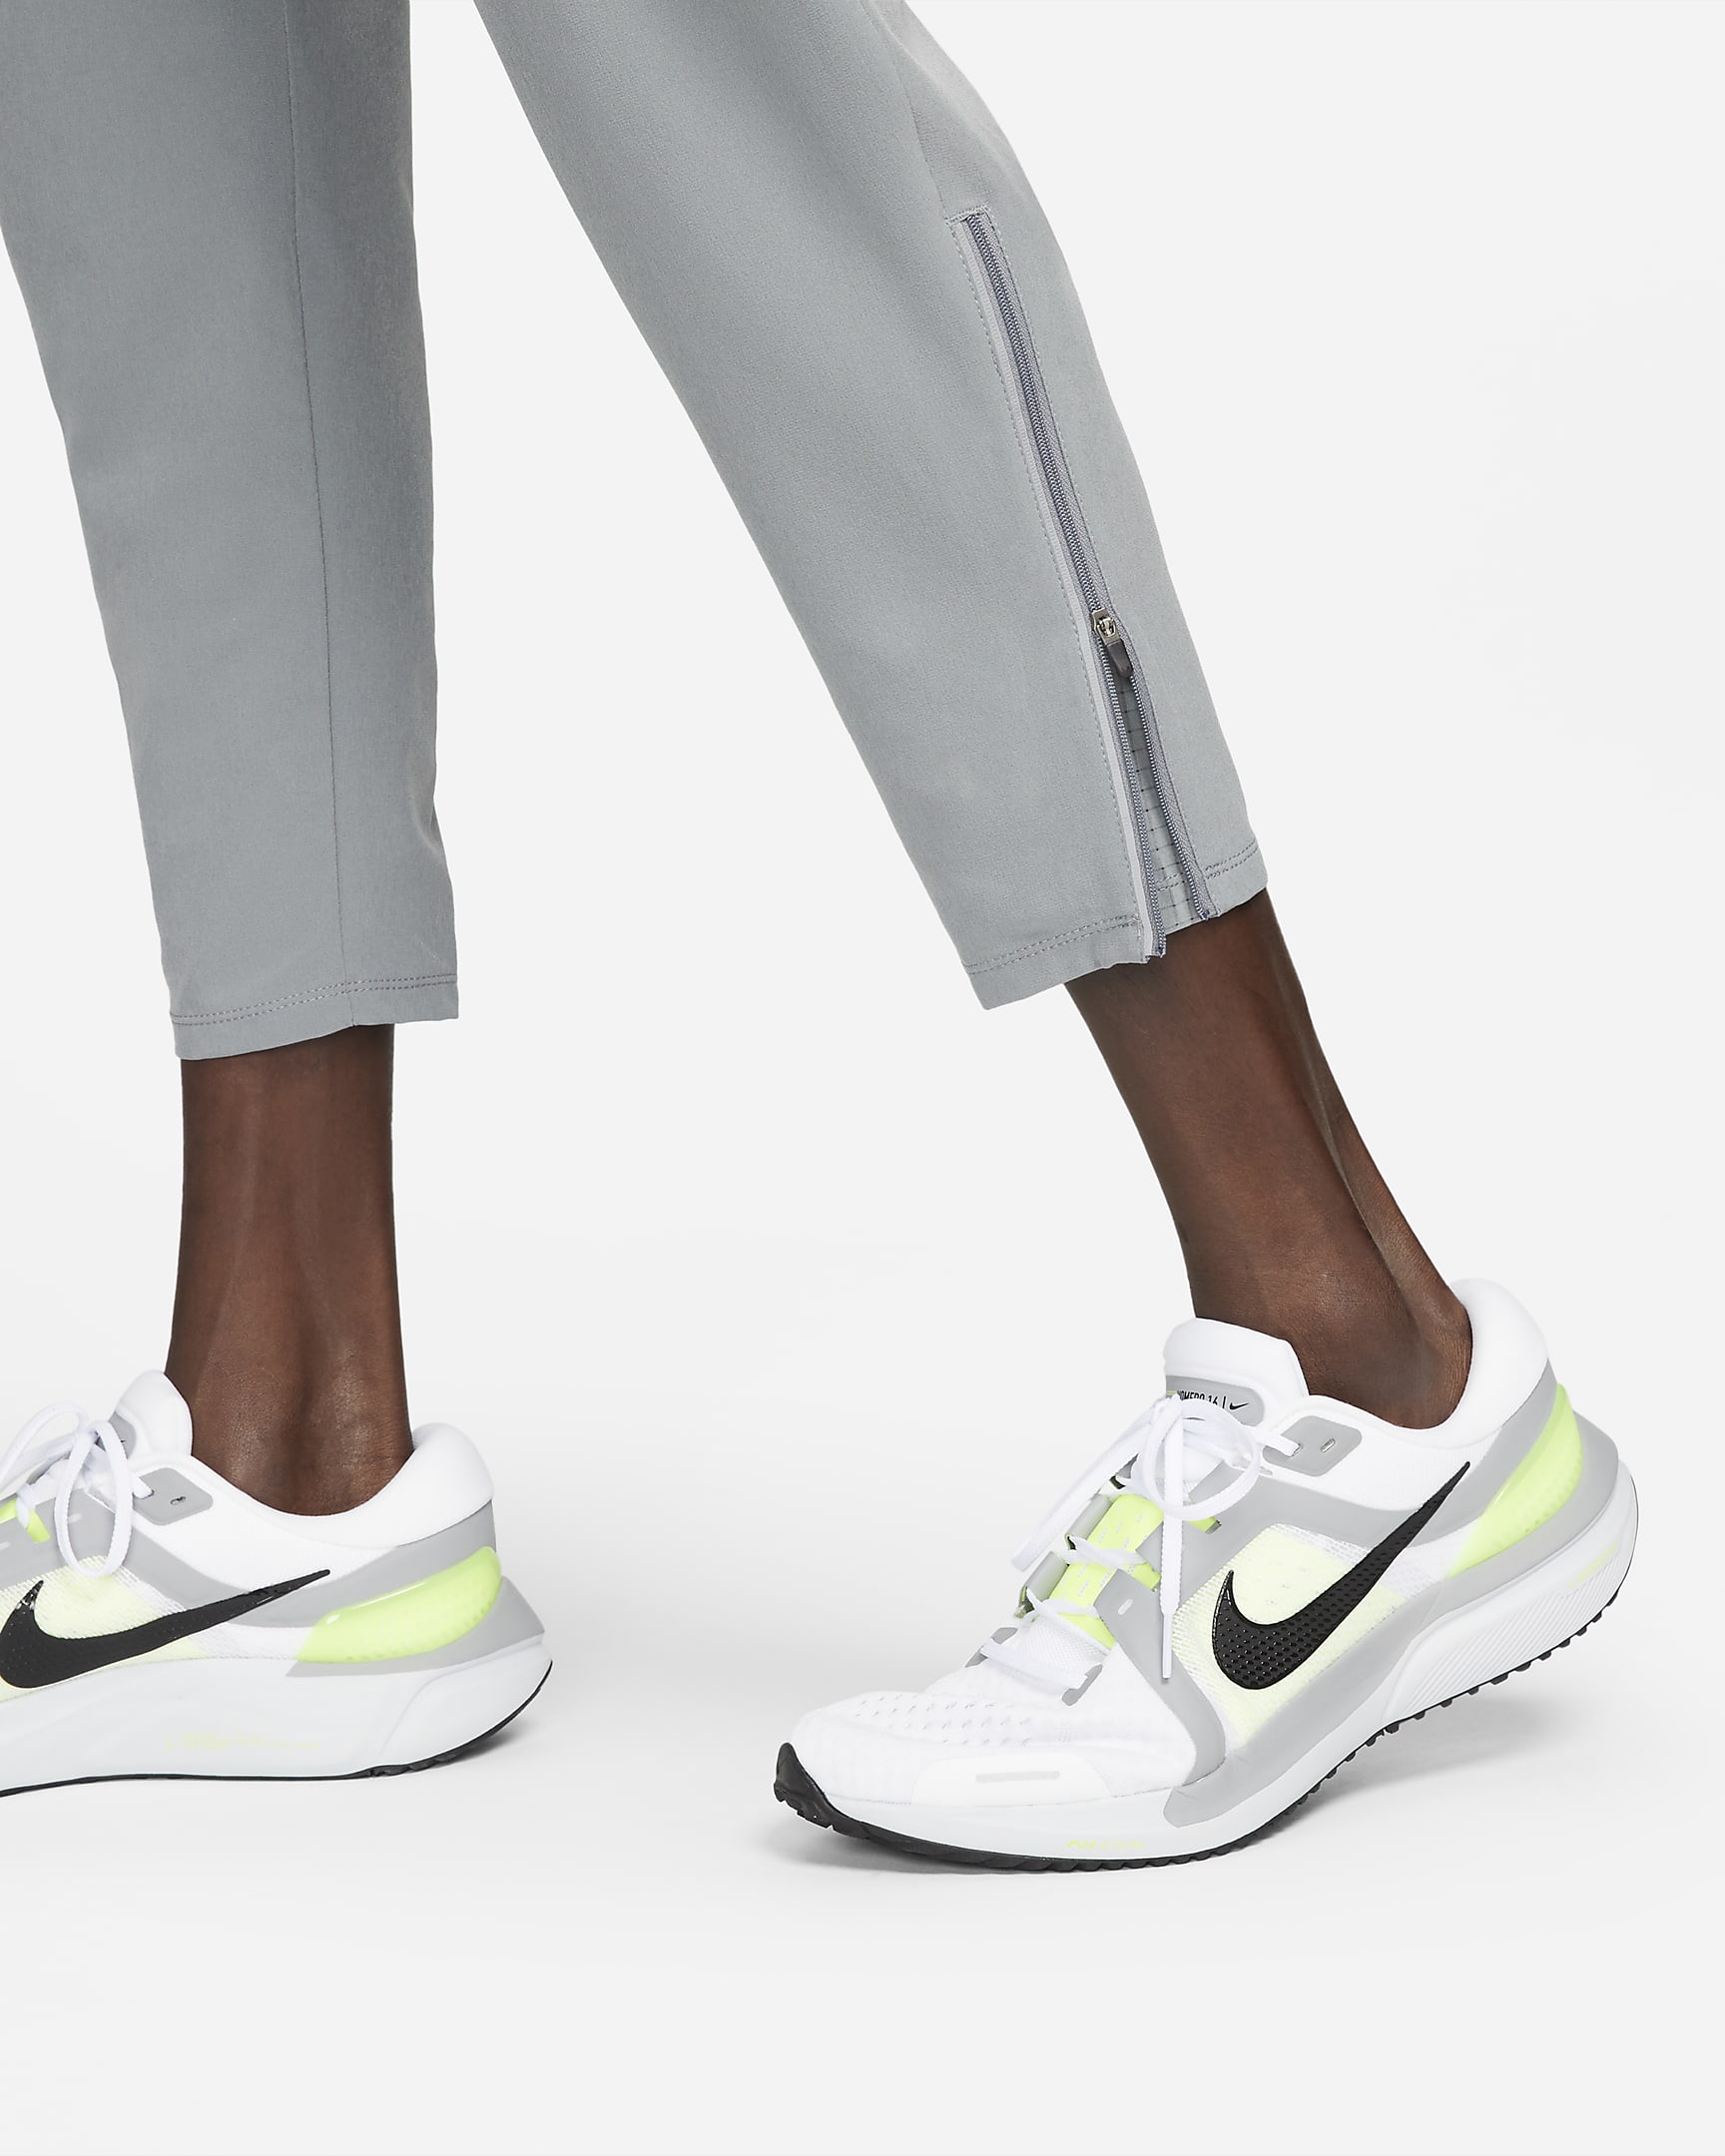 Calças de running entrançadas Dri-FIT Nike Phenom para homem - Cinzento Smoke